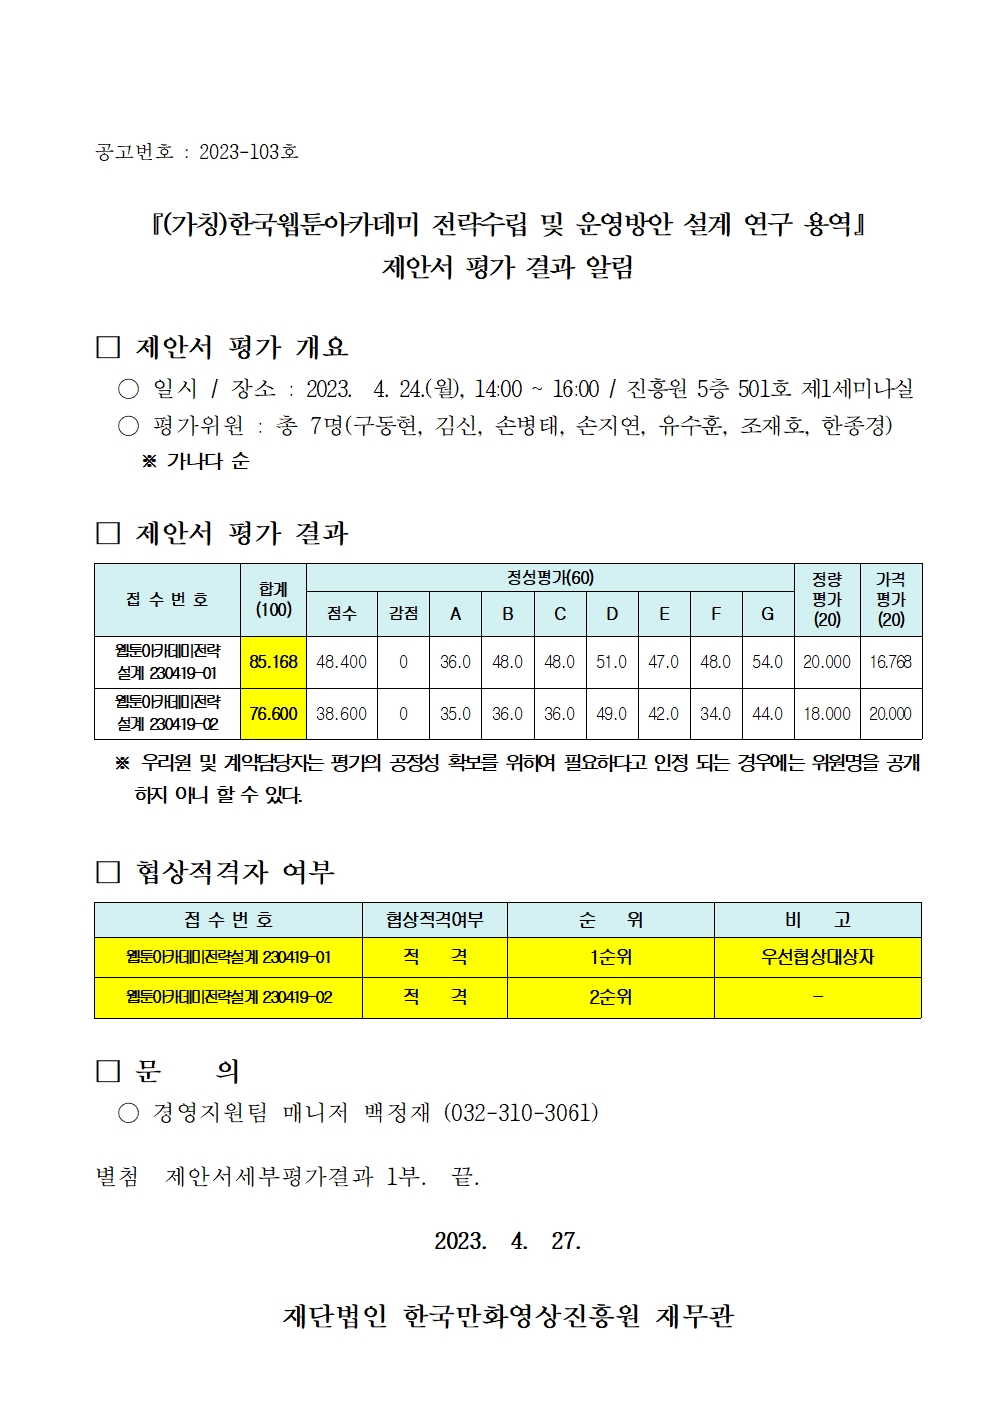 『(가칭)한국웹툰아카데미 전략수립 및 운영방안 설계 연구 용역』제안서 평가 결과 알림